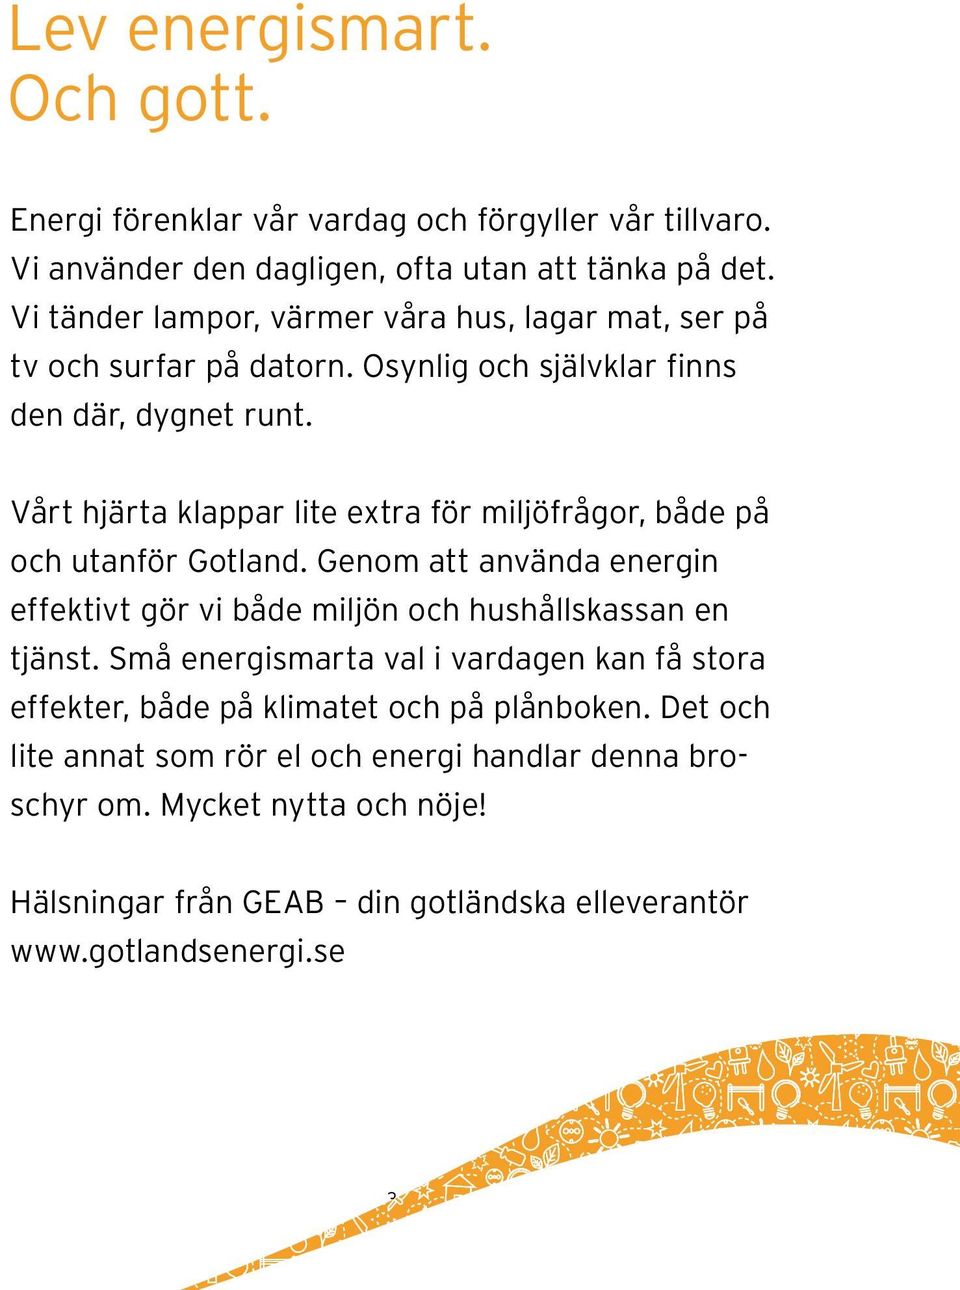 Vårt hjärta klappar lite extra för miljöfrågor, både på och utanför Gotland. Genom att använda energin effektivt gör vi både miljön och hushållskassan en tjänst.